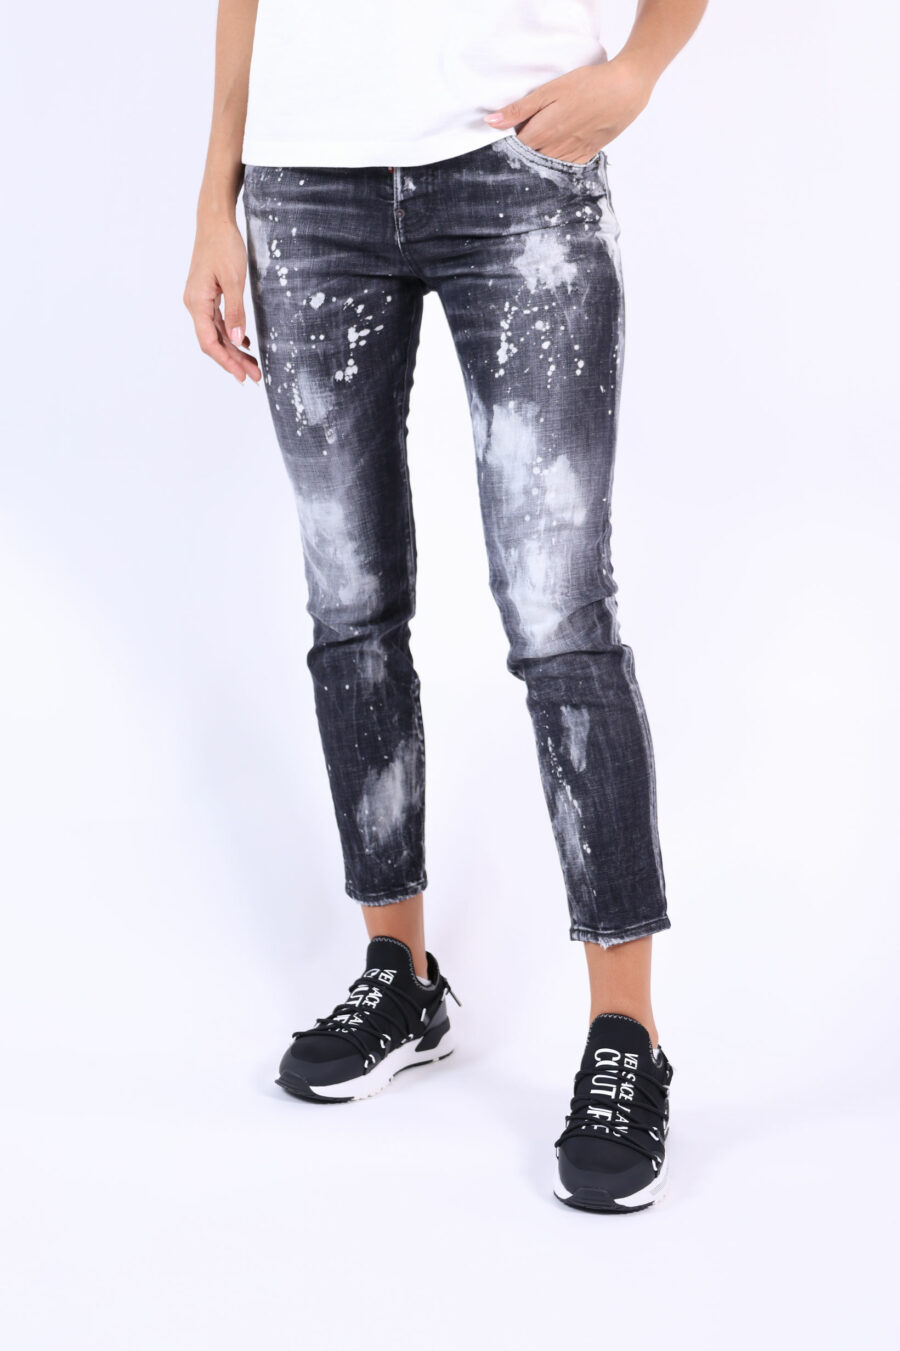 Coole Mädchen-Jeans-Hose "cool girl jean" schwarz an den Stellen getragen - 361223054662201627 1